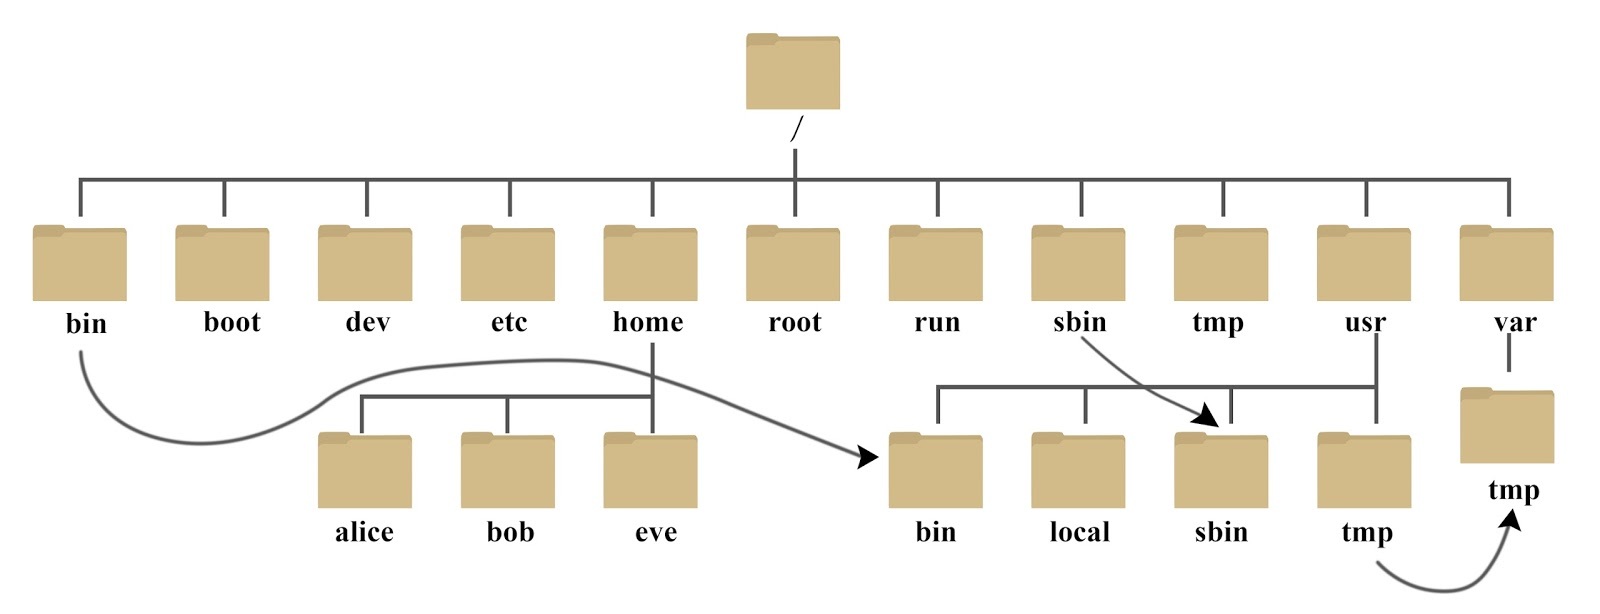 Linux 系统目录结构的英文缩写的解释